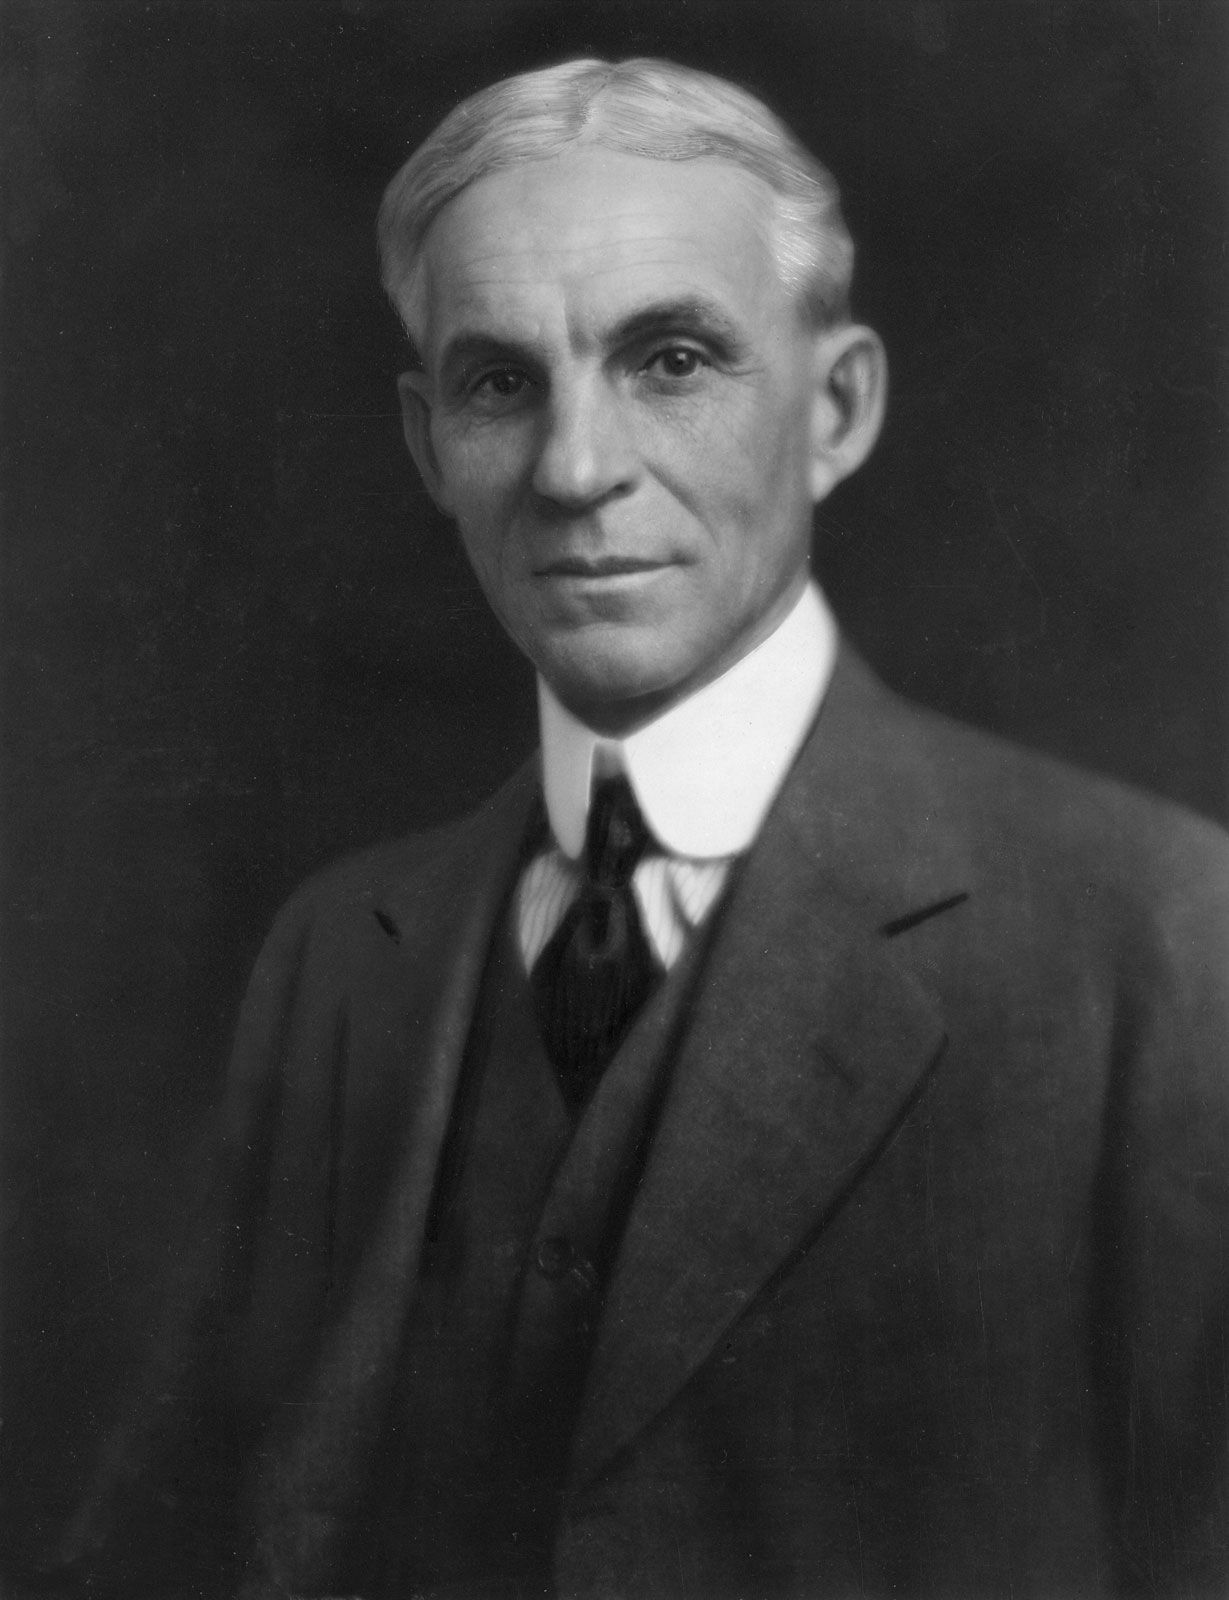 Henry Ford portesi, 1863 - 1947